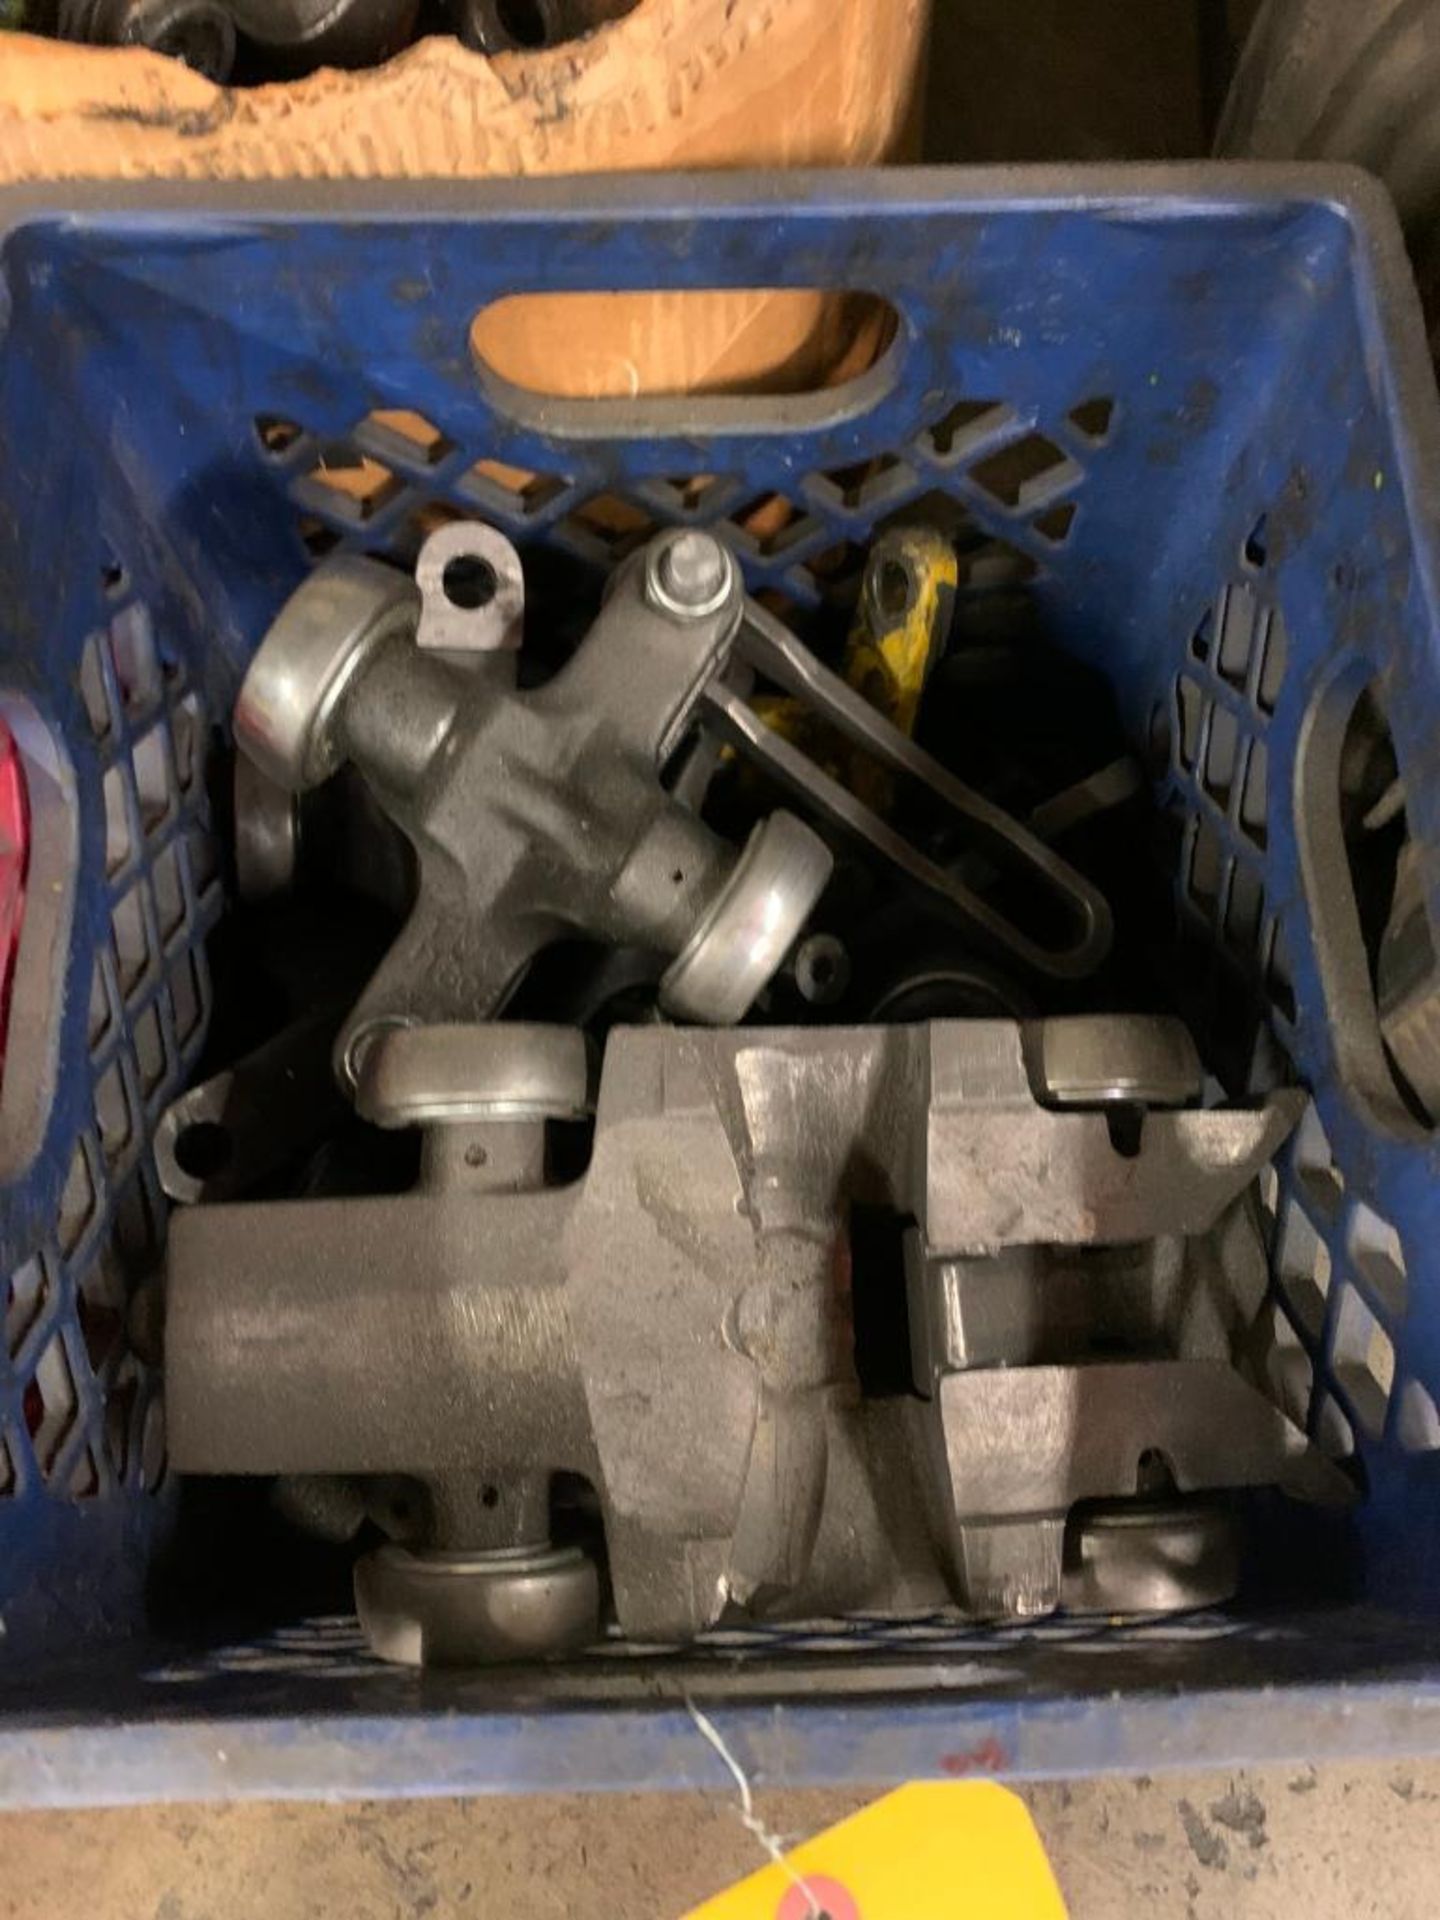 Welding Rod, Assorted Conveyor Parts - Image 3 of 7